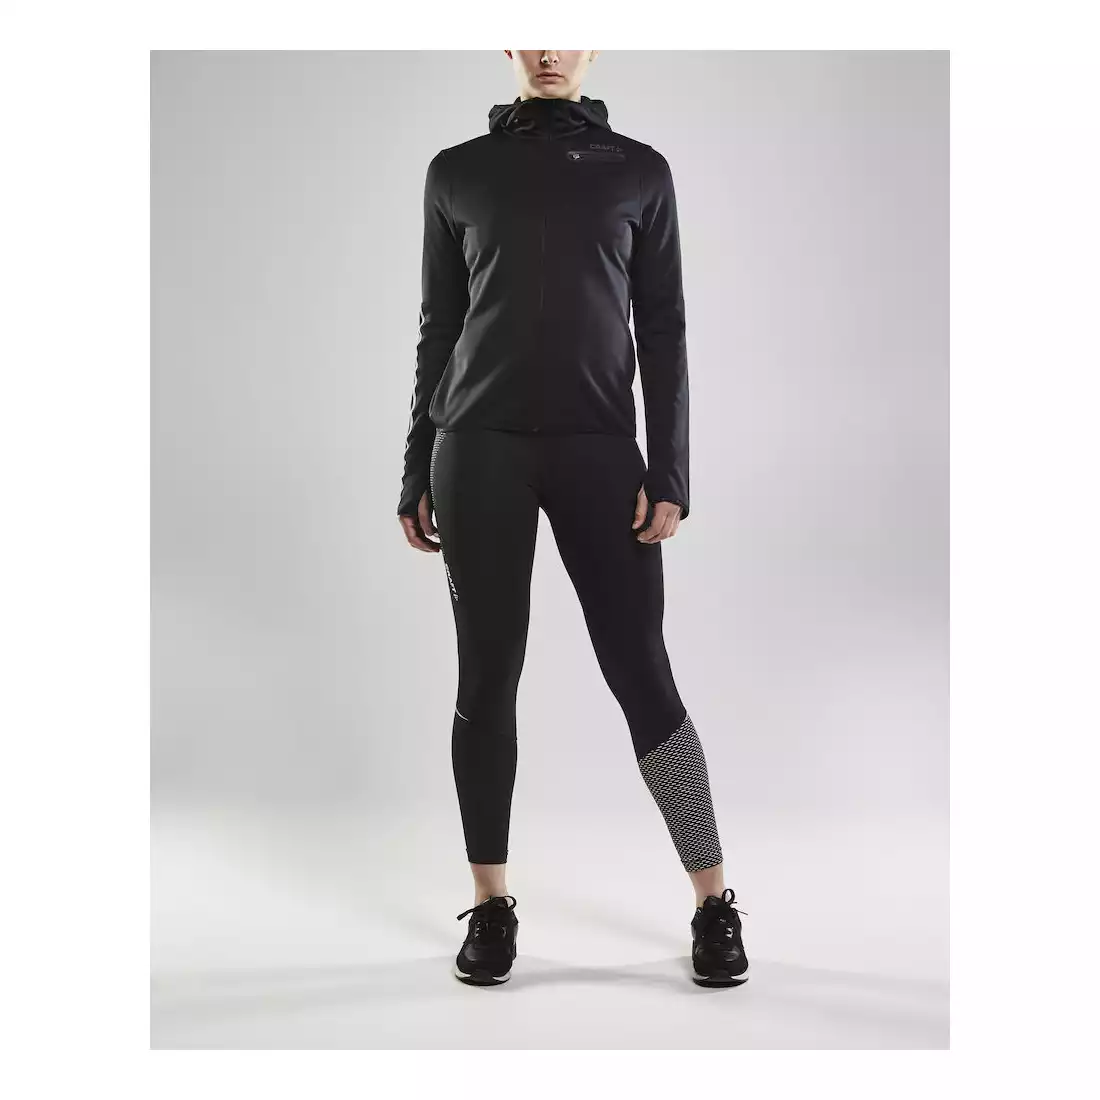 CRAFT EAZE damska, ciepła bluza sportowa z kapturem, czarna 1906033-999000